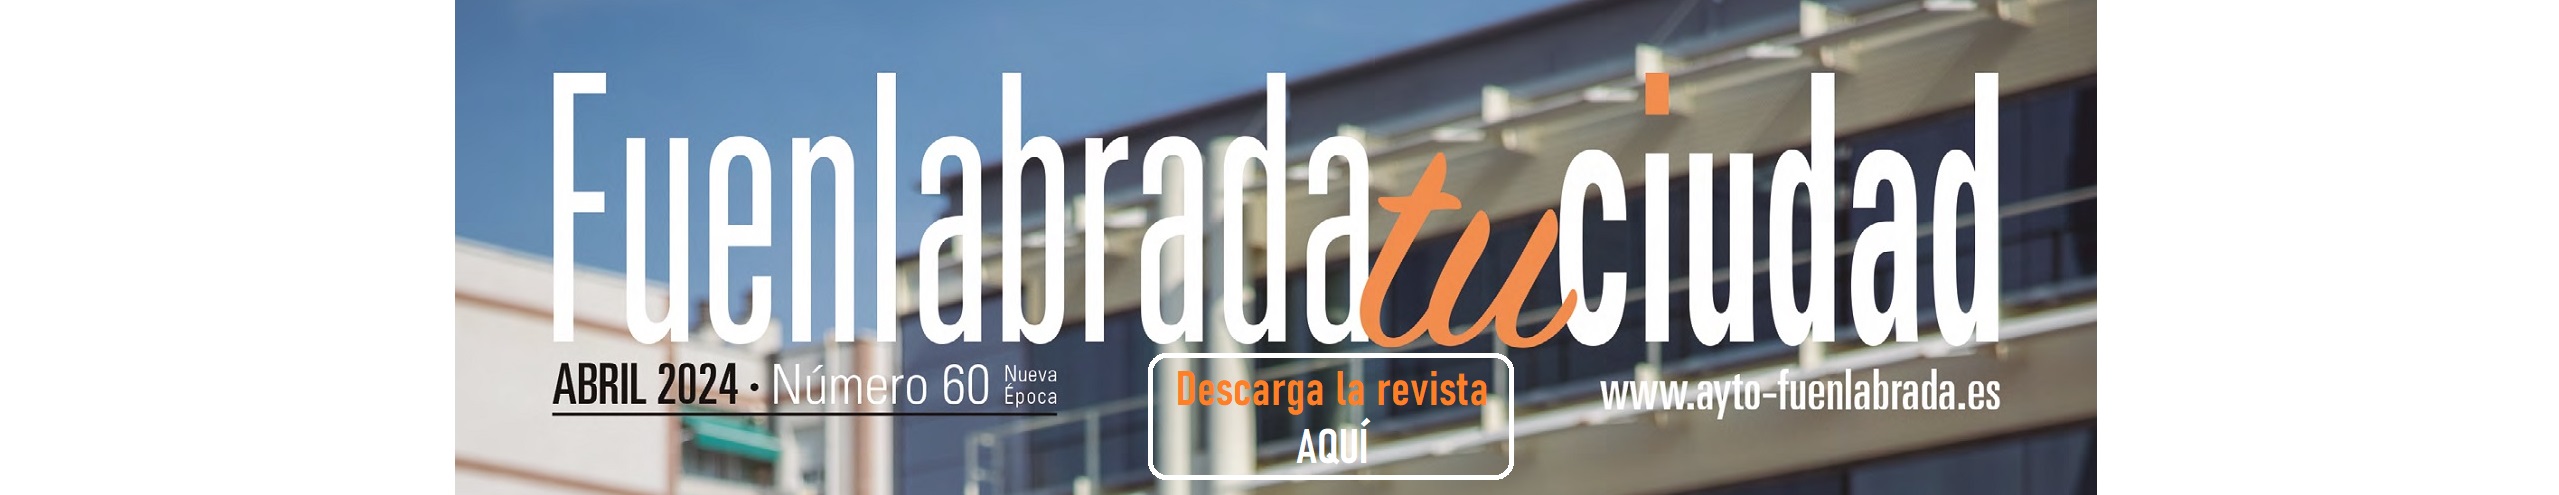 Revista Fuenlabrada tu ciudad, abre pdf en ventana nueva